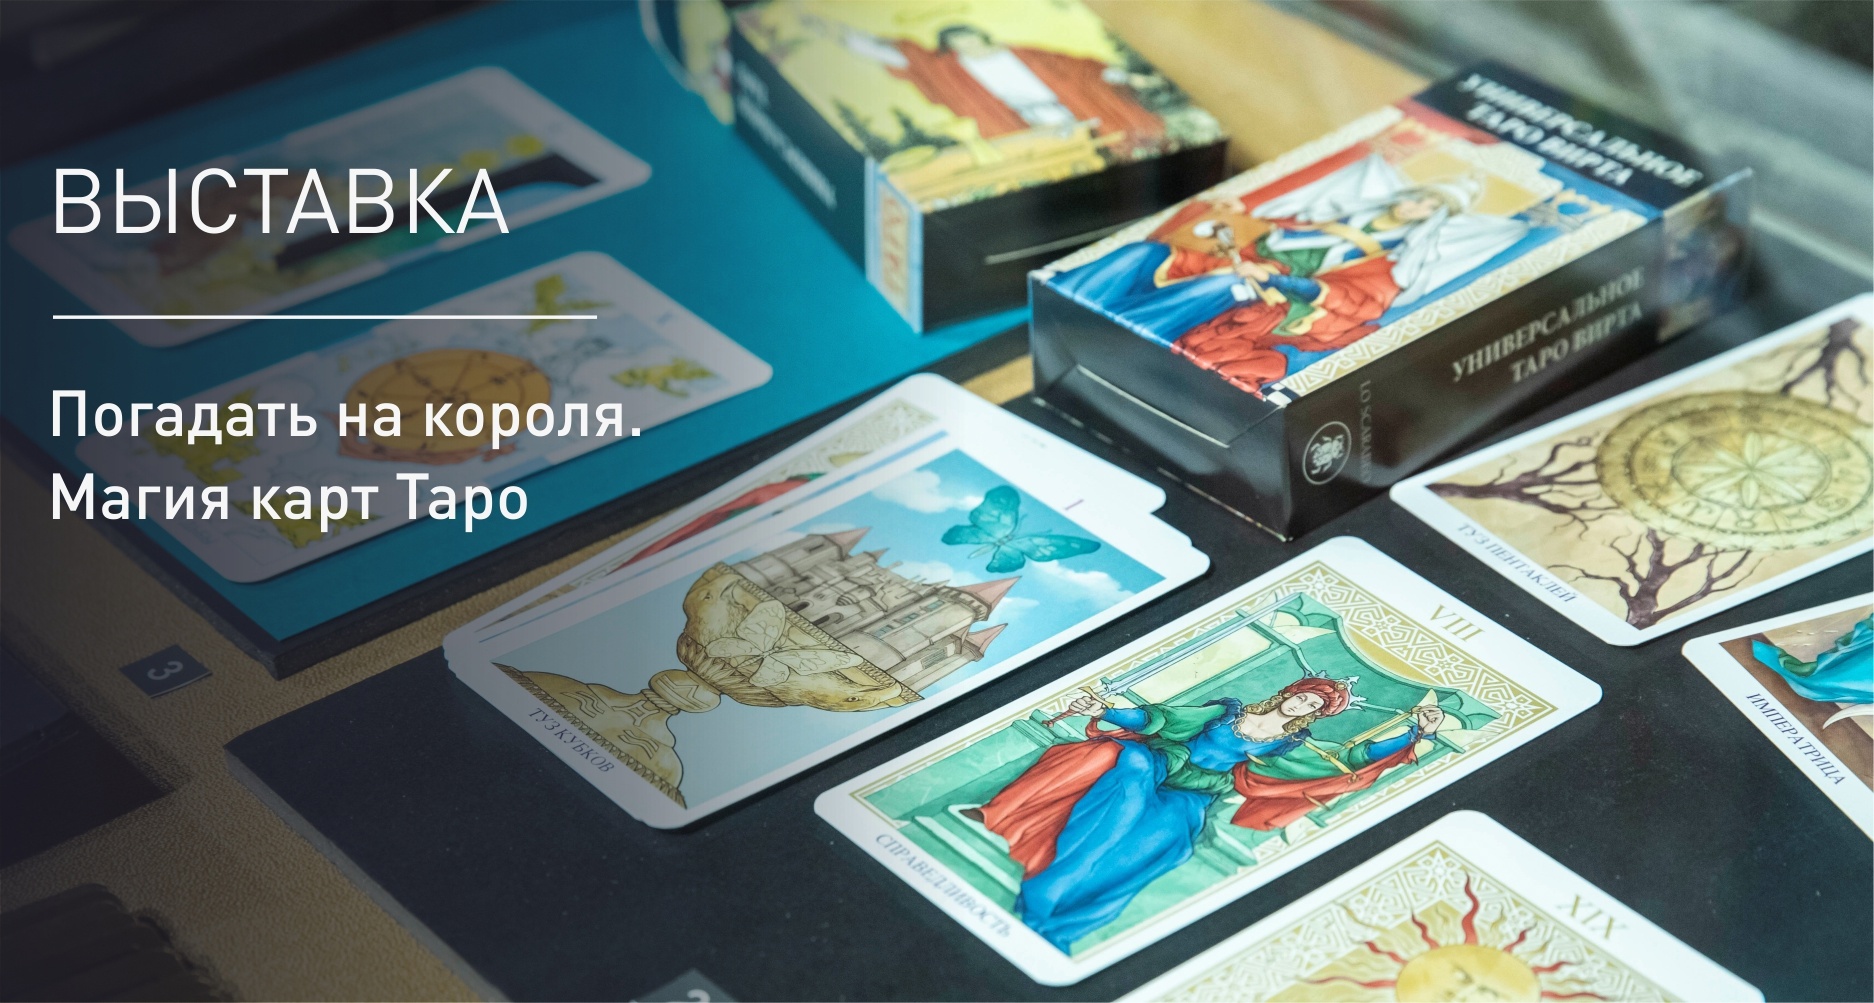 Museo de Historia de la Religión: ¿Qué sabes de las cartas del tarot?